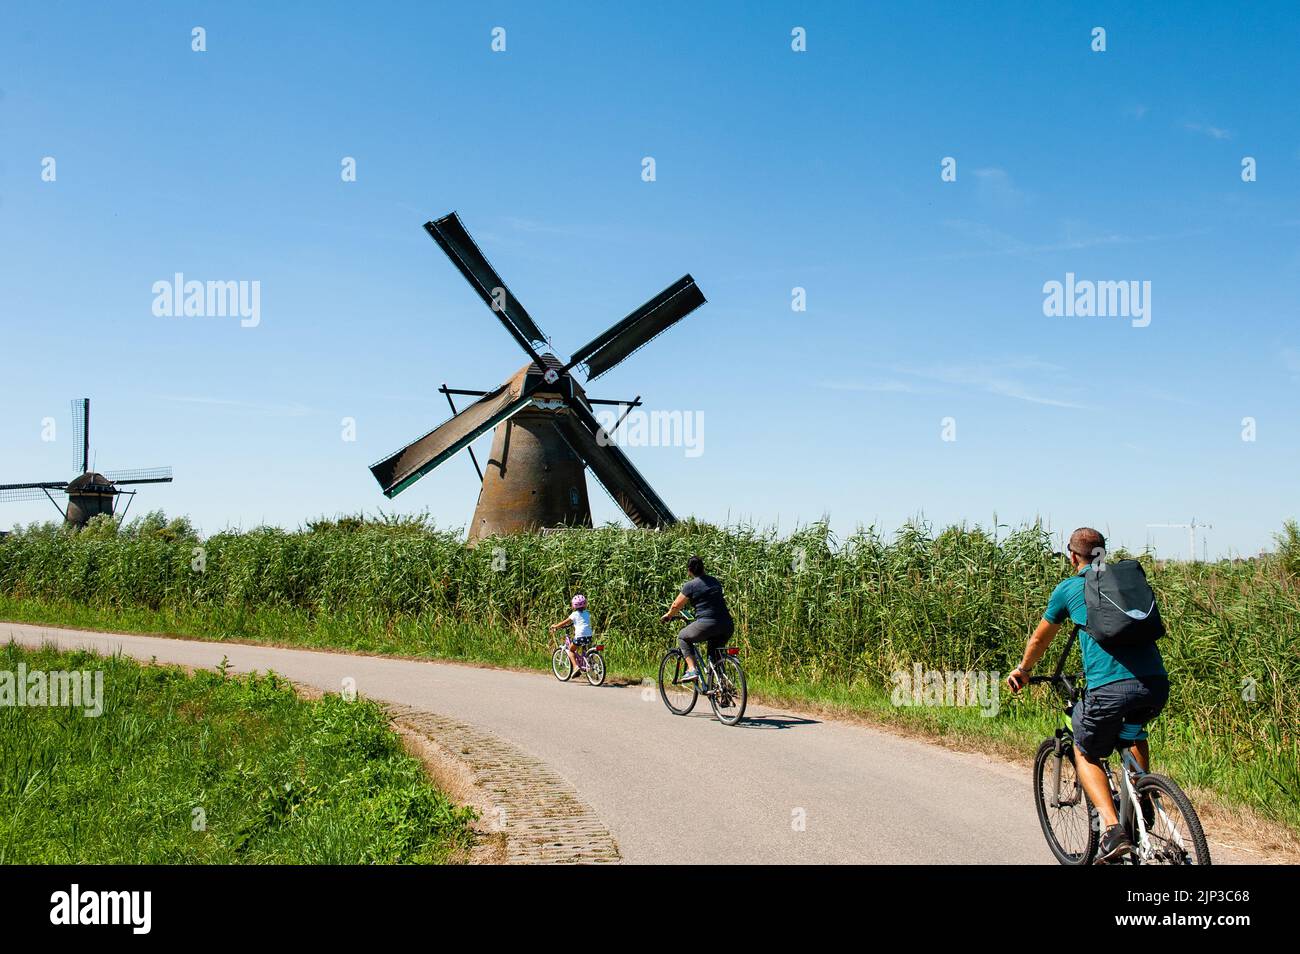 Kinderdijk, pays-Bas. 13th août 2022. Un groupe de personnes sur leurs vélos passe devant les moulins à vent. Dans la belle région riche en eau près de Dordrecht, vous trouverez les moulins à vent de Kinderdijk. Construits vers 1740, ces 19 magnifiques moulins à vent font partie d'un plus grand système de gestion de l'eau pour éviter les inondations. Aujourd'hui, ils symbolisent la gestion de l'eau aux pays-Bas et, en 1997, ils ont été déclarés site du patrimoine mondial de l'UNESCO. Chaque année, des milliers de touristes du monde entier visitent ce lieu emblématique. Crédit : SOPA Images Limited/Alamy Live News Banque D'Images